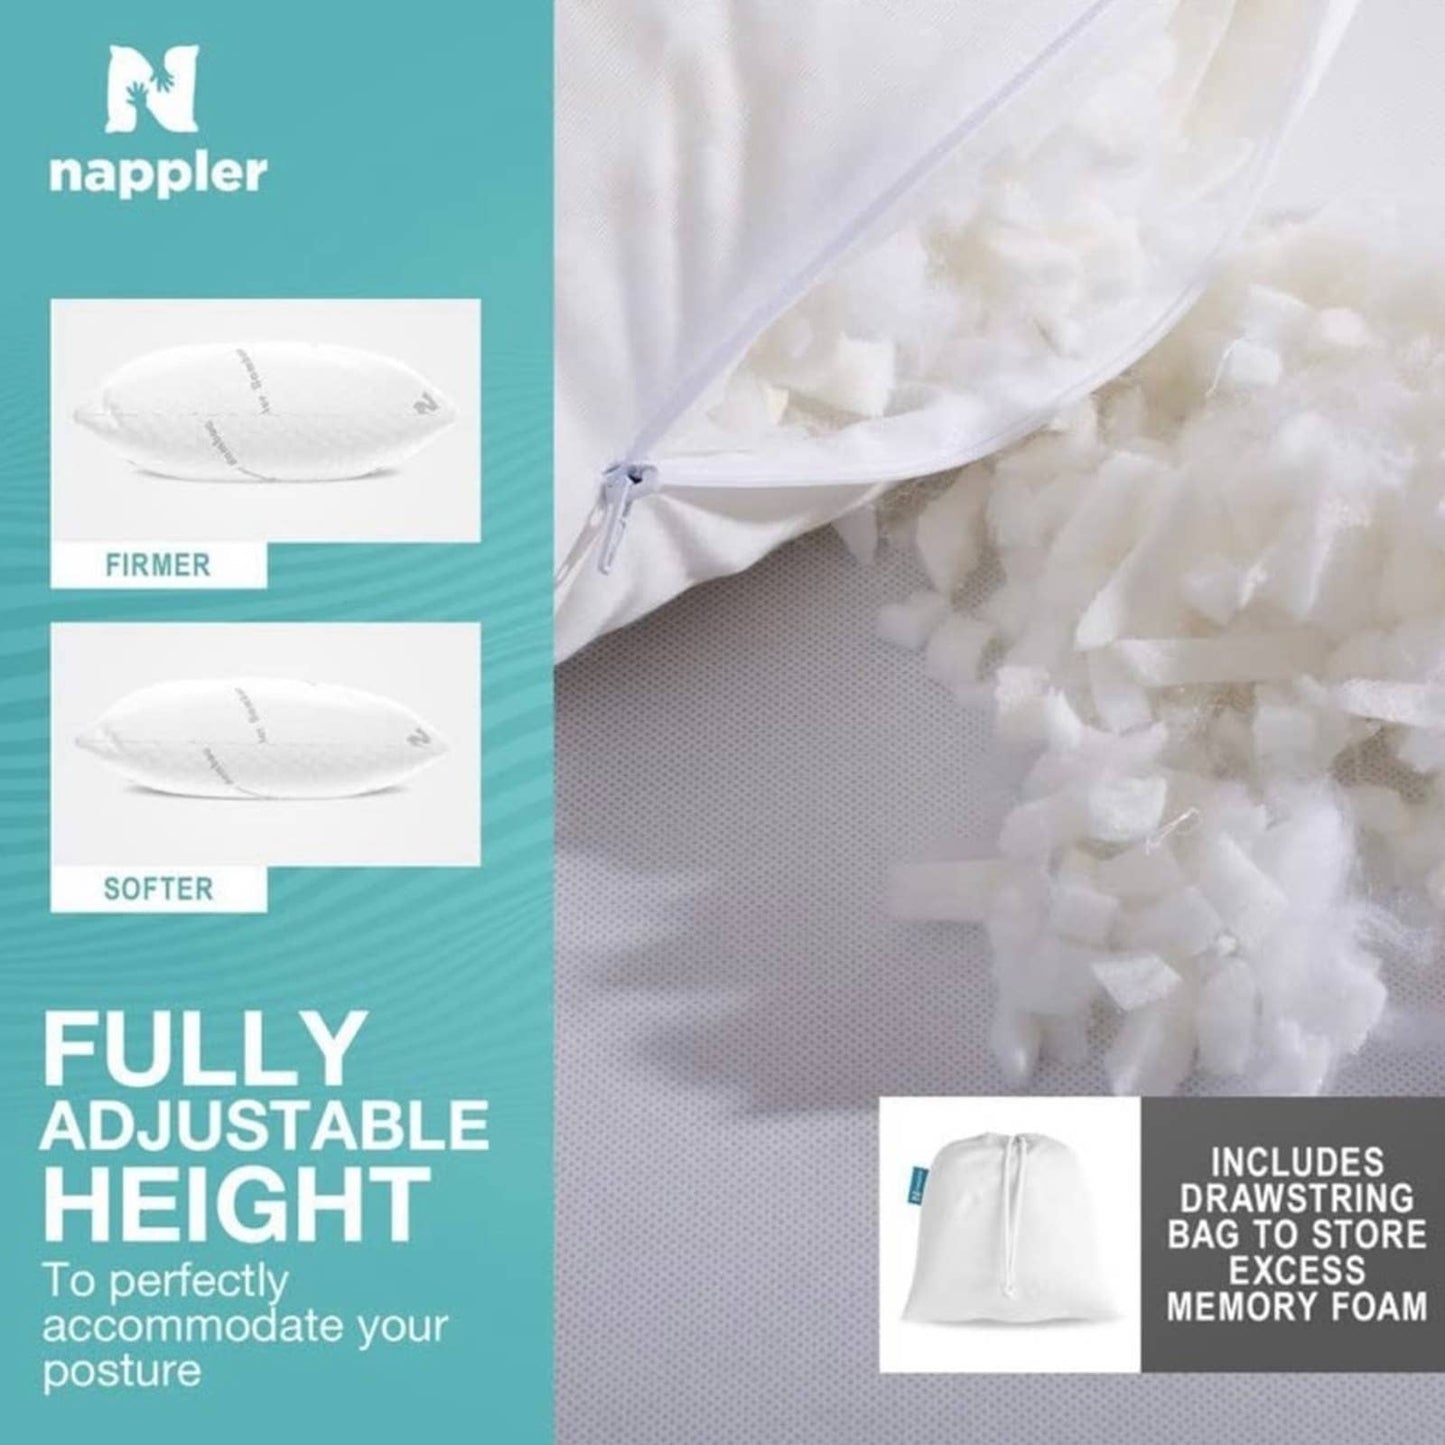 Nappler Premium Queen Pillow Hypoallergenic Adjustable Memory Foam